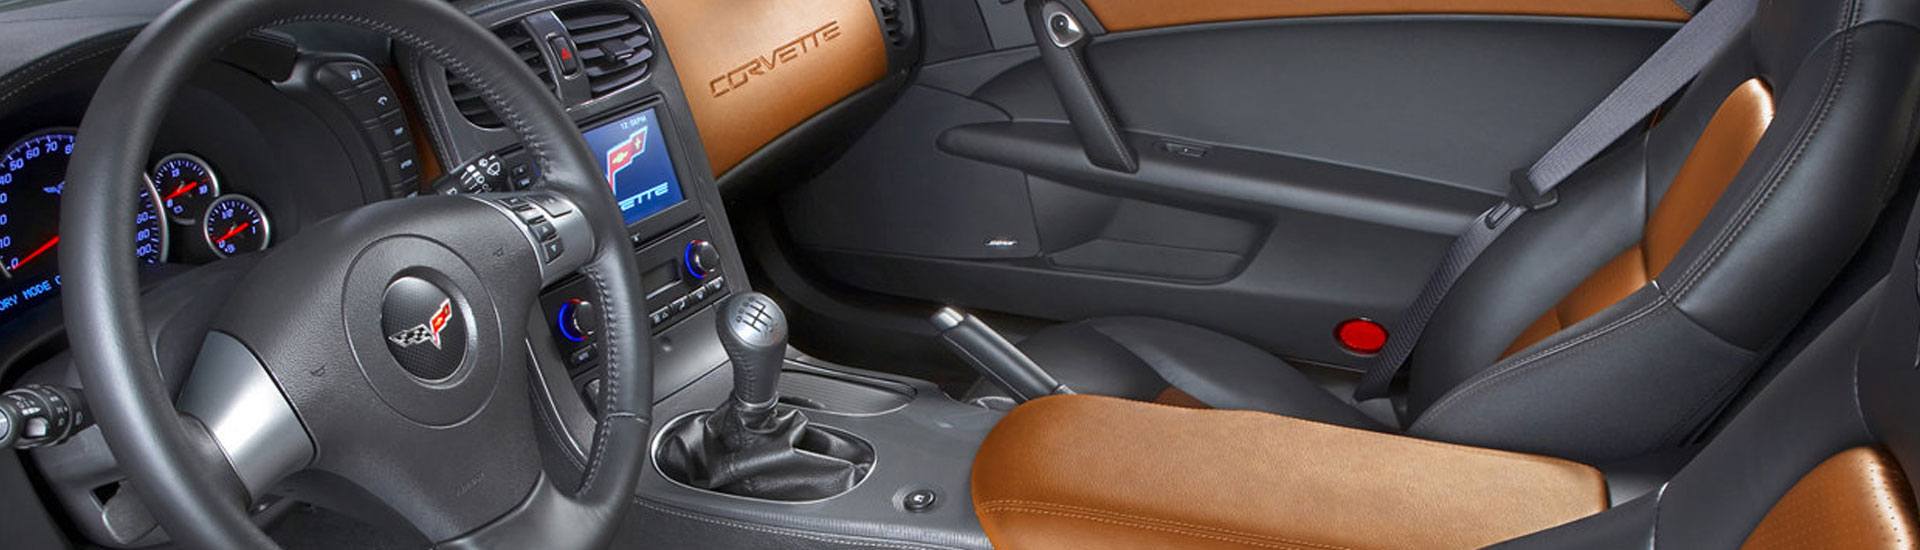 2008 Chevrolet Corvette Dash Kits